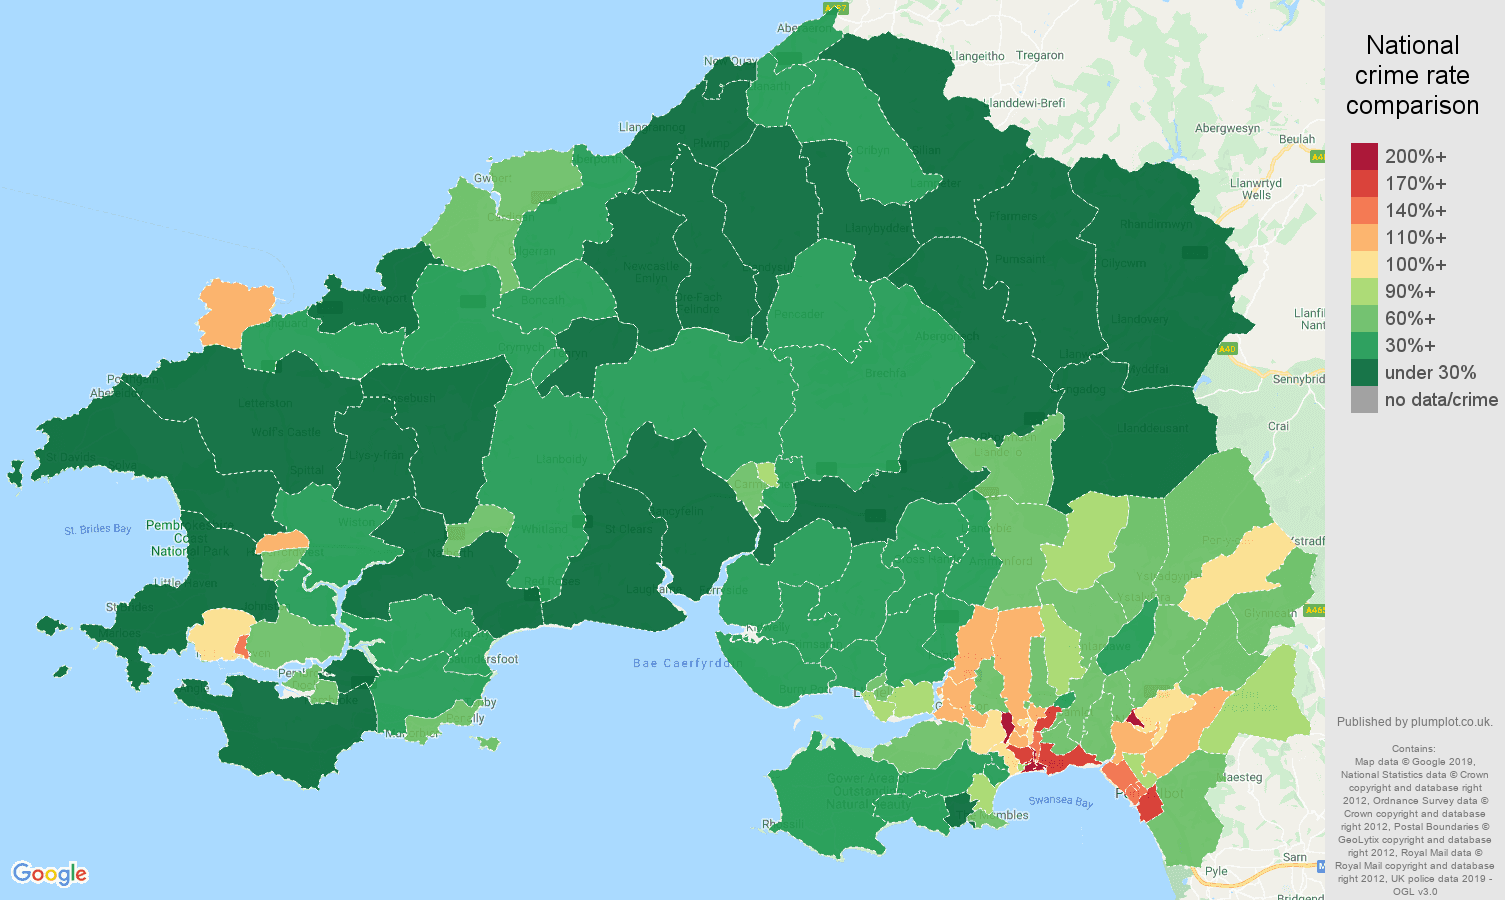 Swansea public order crime rate comparison map